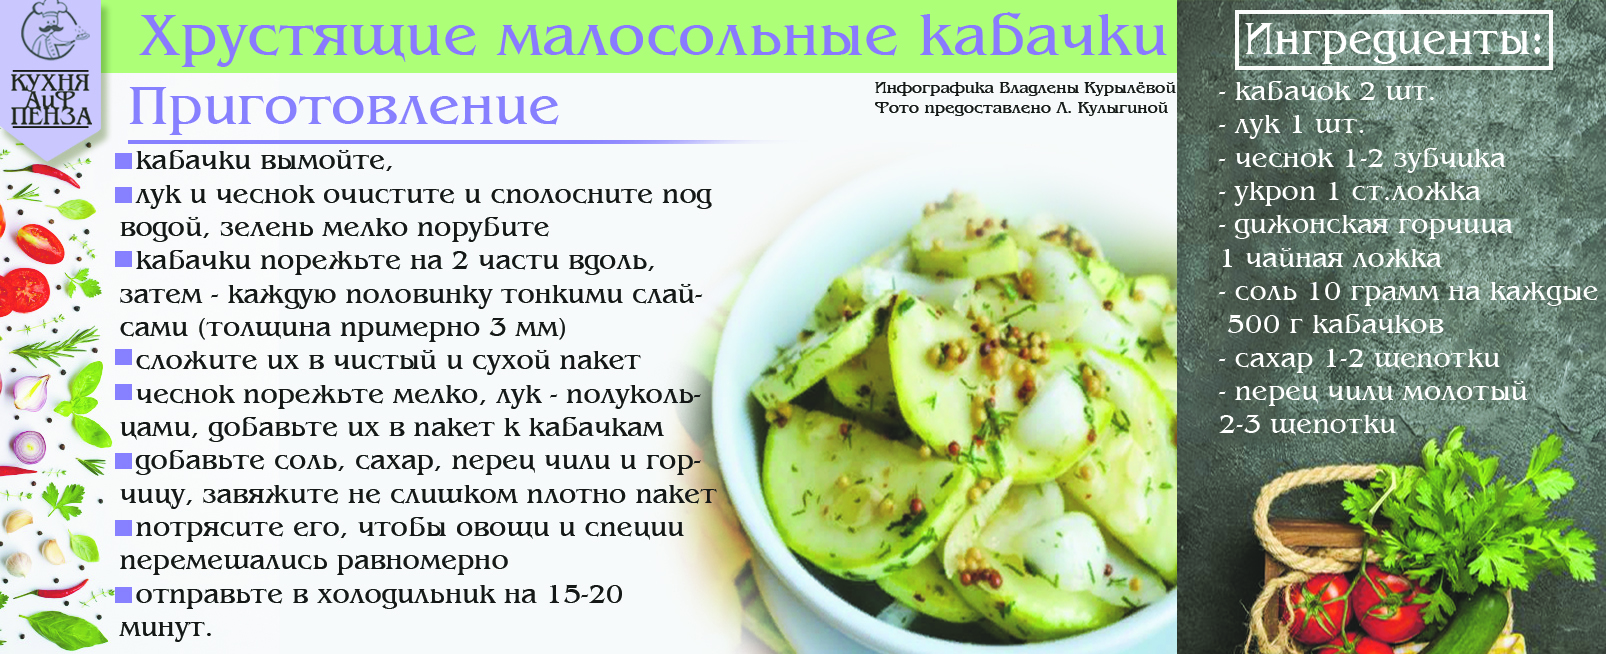 Ника белоцерковская рецепты малосольные огурцы